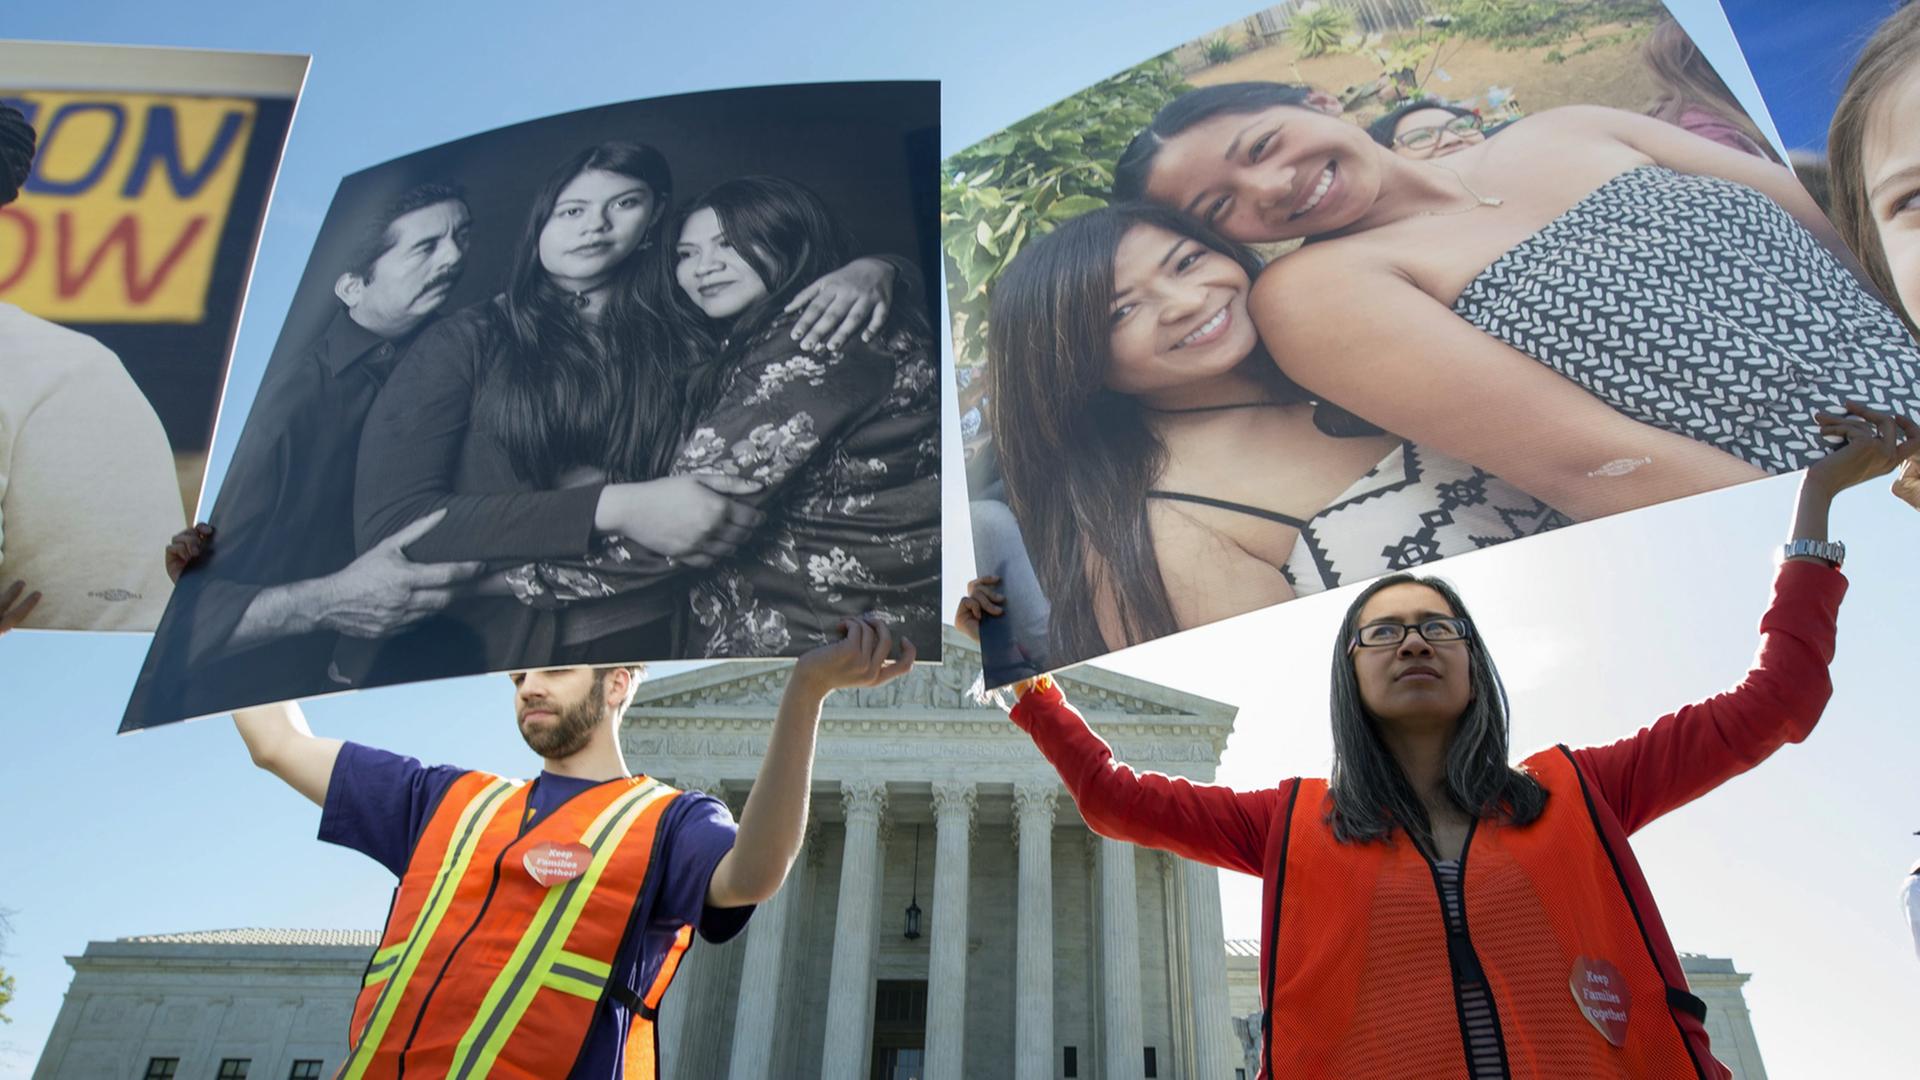 Aktivisten, die sich für illegale Einwanderer einsetzen, demonstrieren vor dem Supreme Court in Washington, D.C.